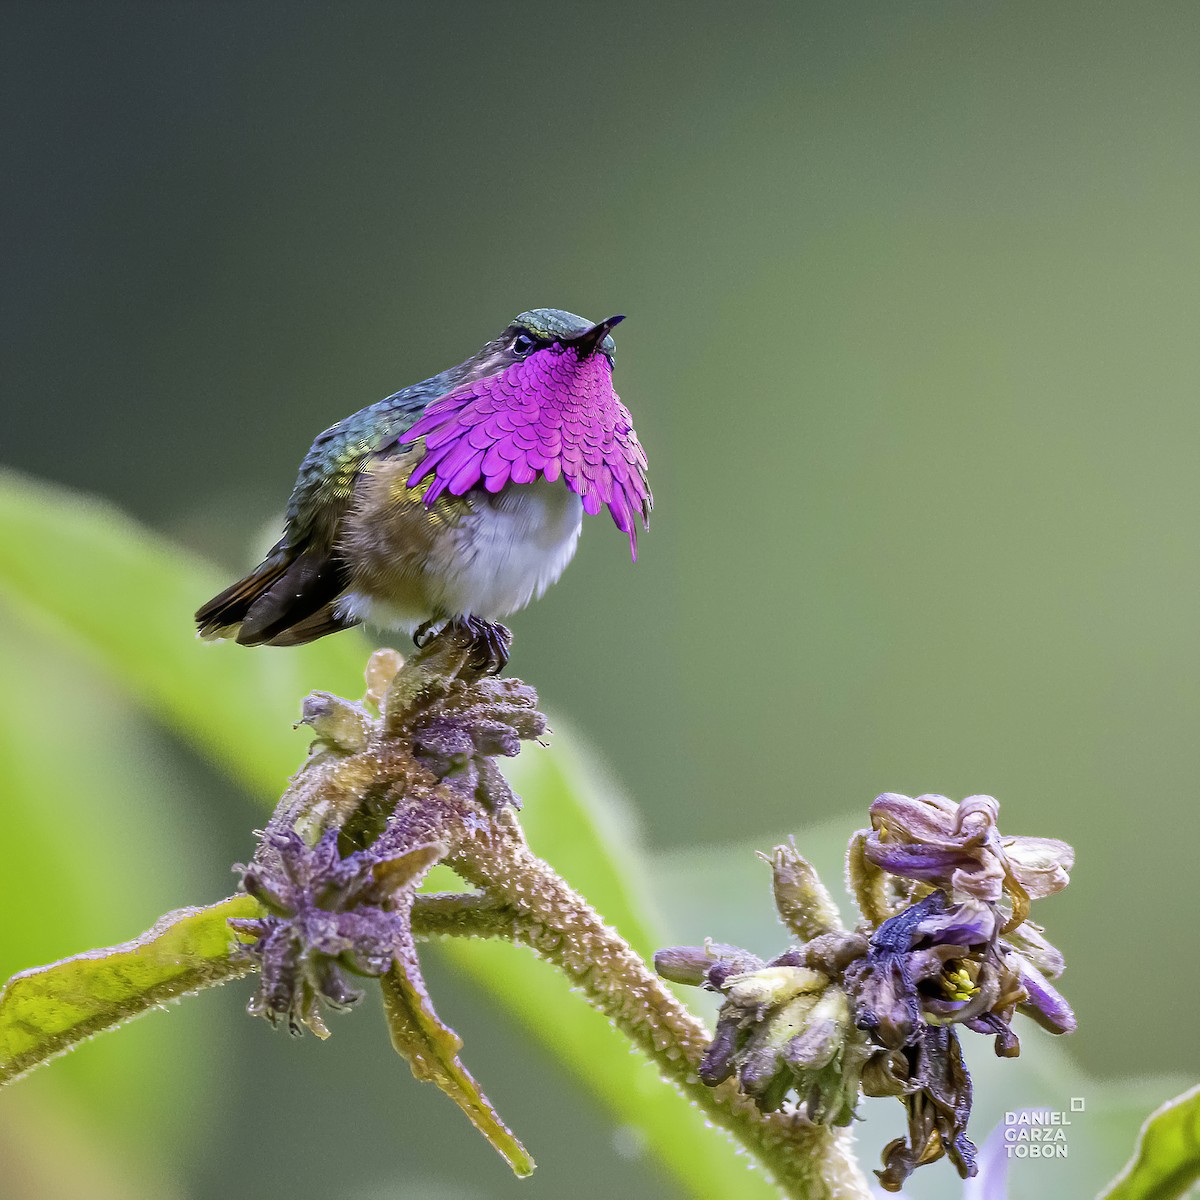 Wine-throated Hummingbird - Daniel  Garza Tobón